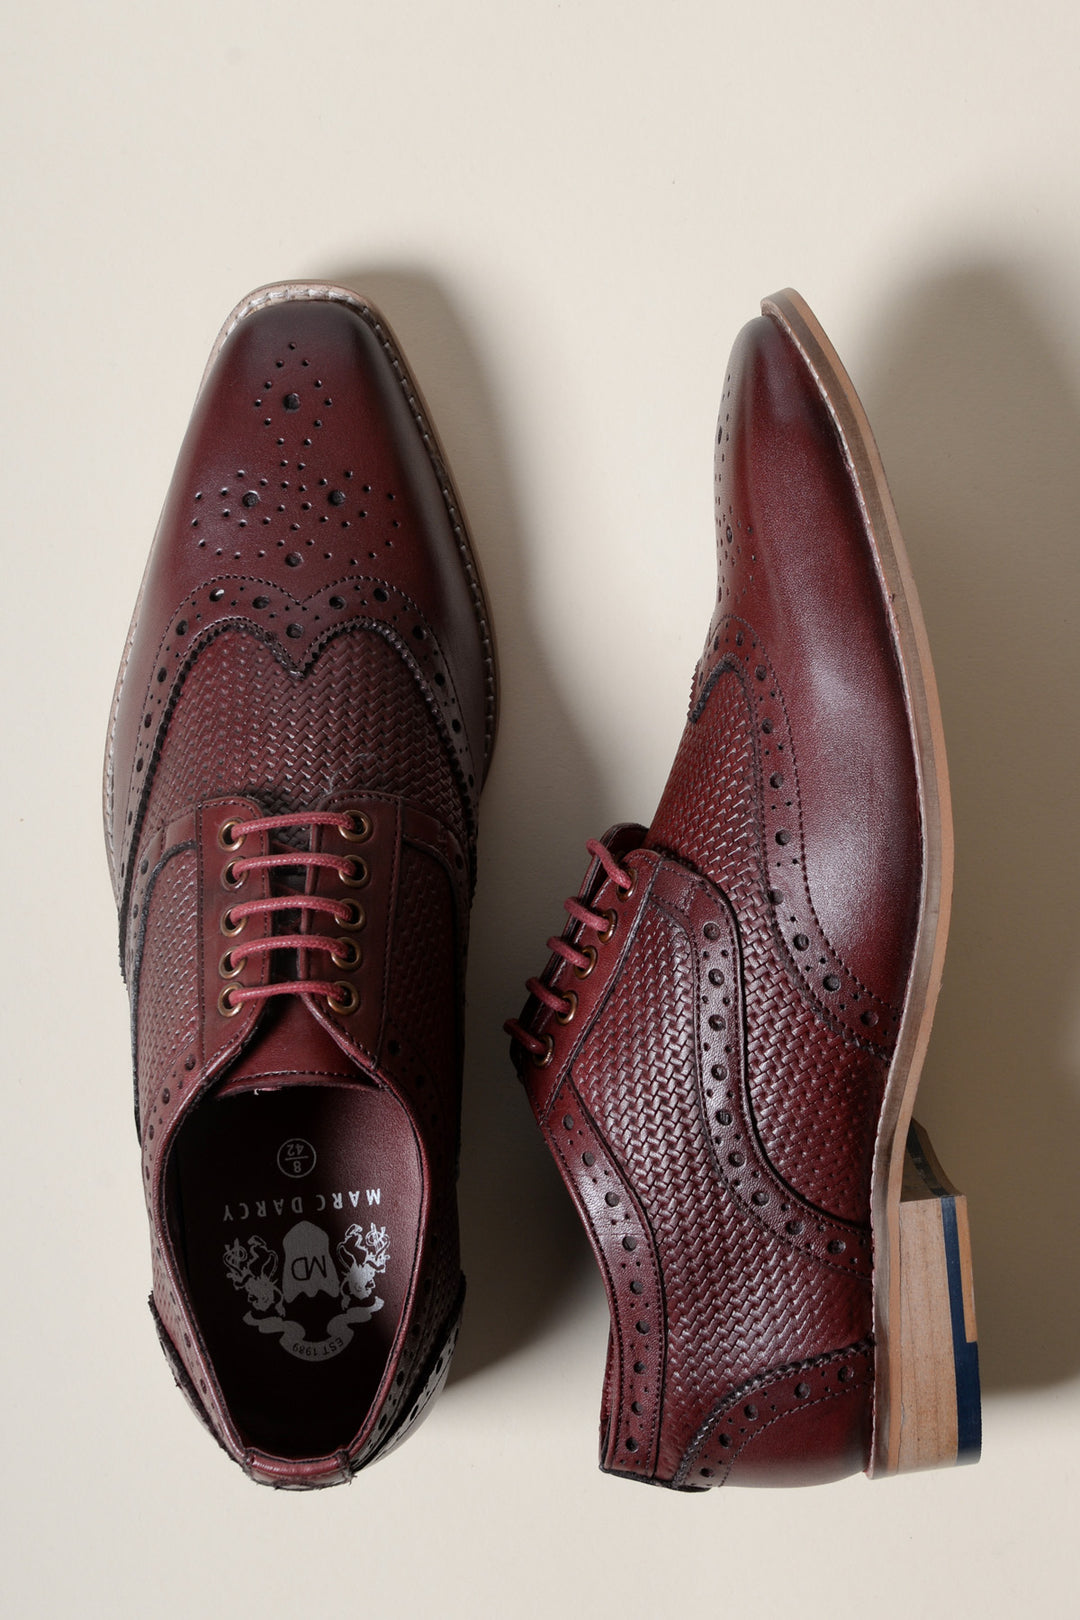 BRANDON - Bordeaux Burgundy Leather Wingtip Brogue Shoe